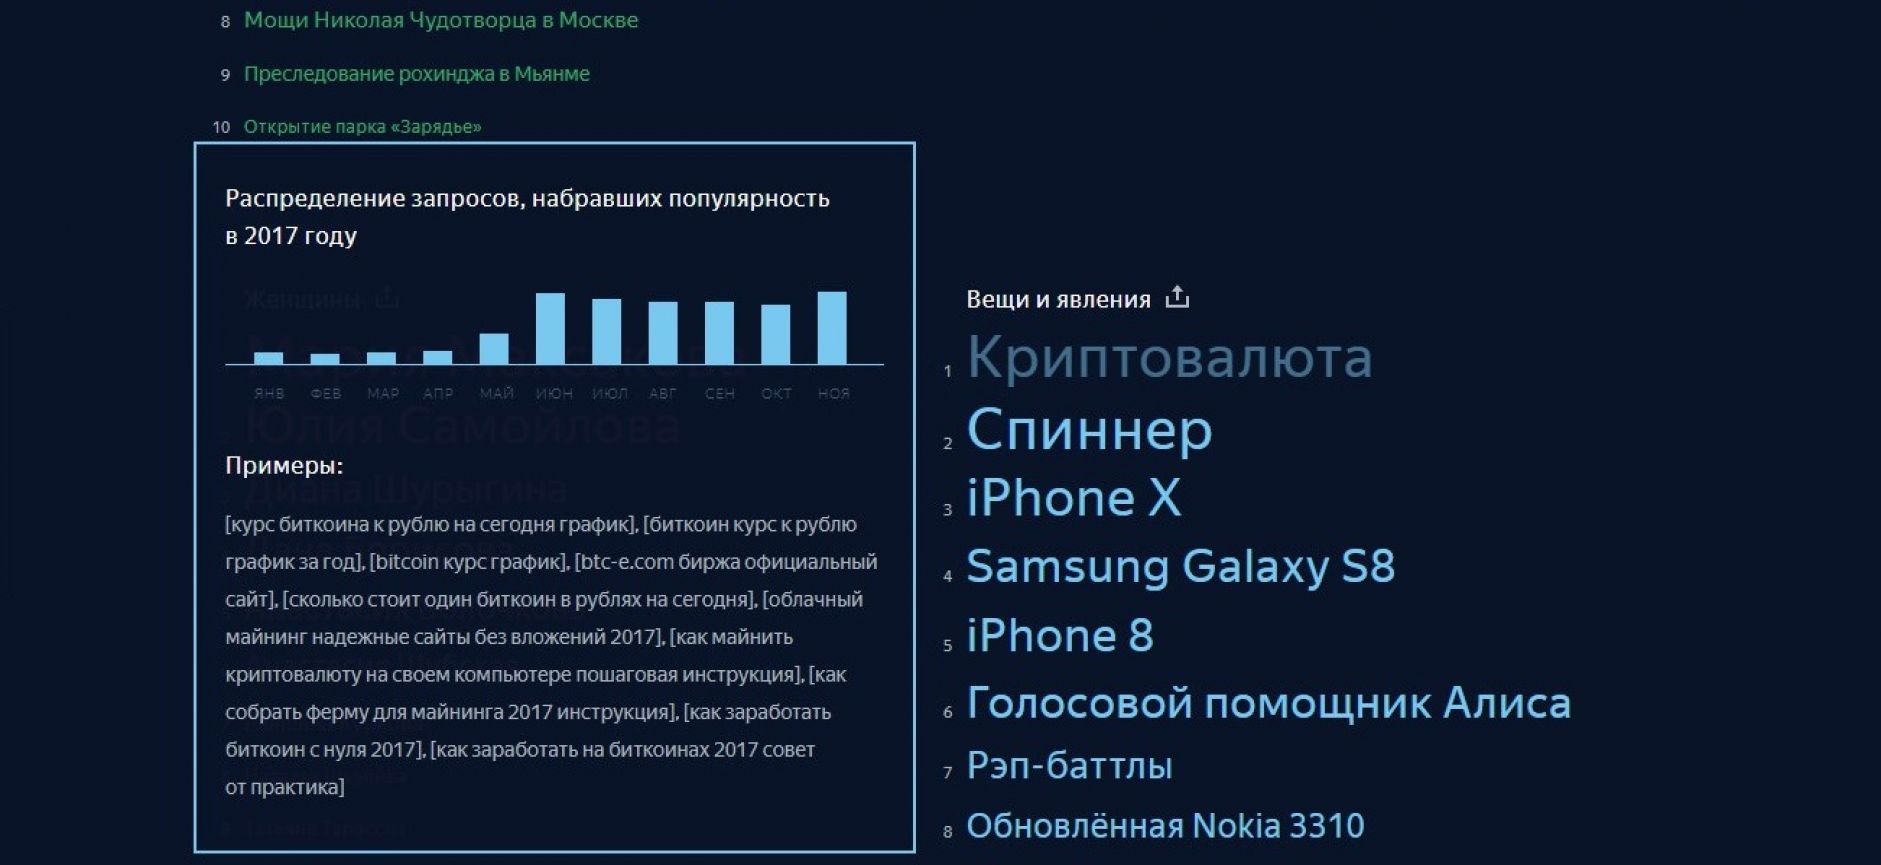 Актуальные темы для поиска в Яндексе за год